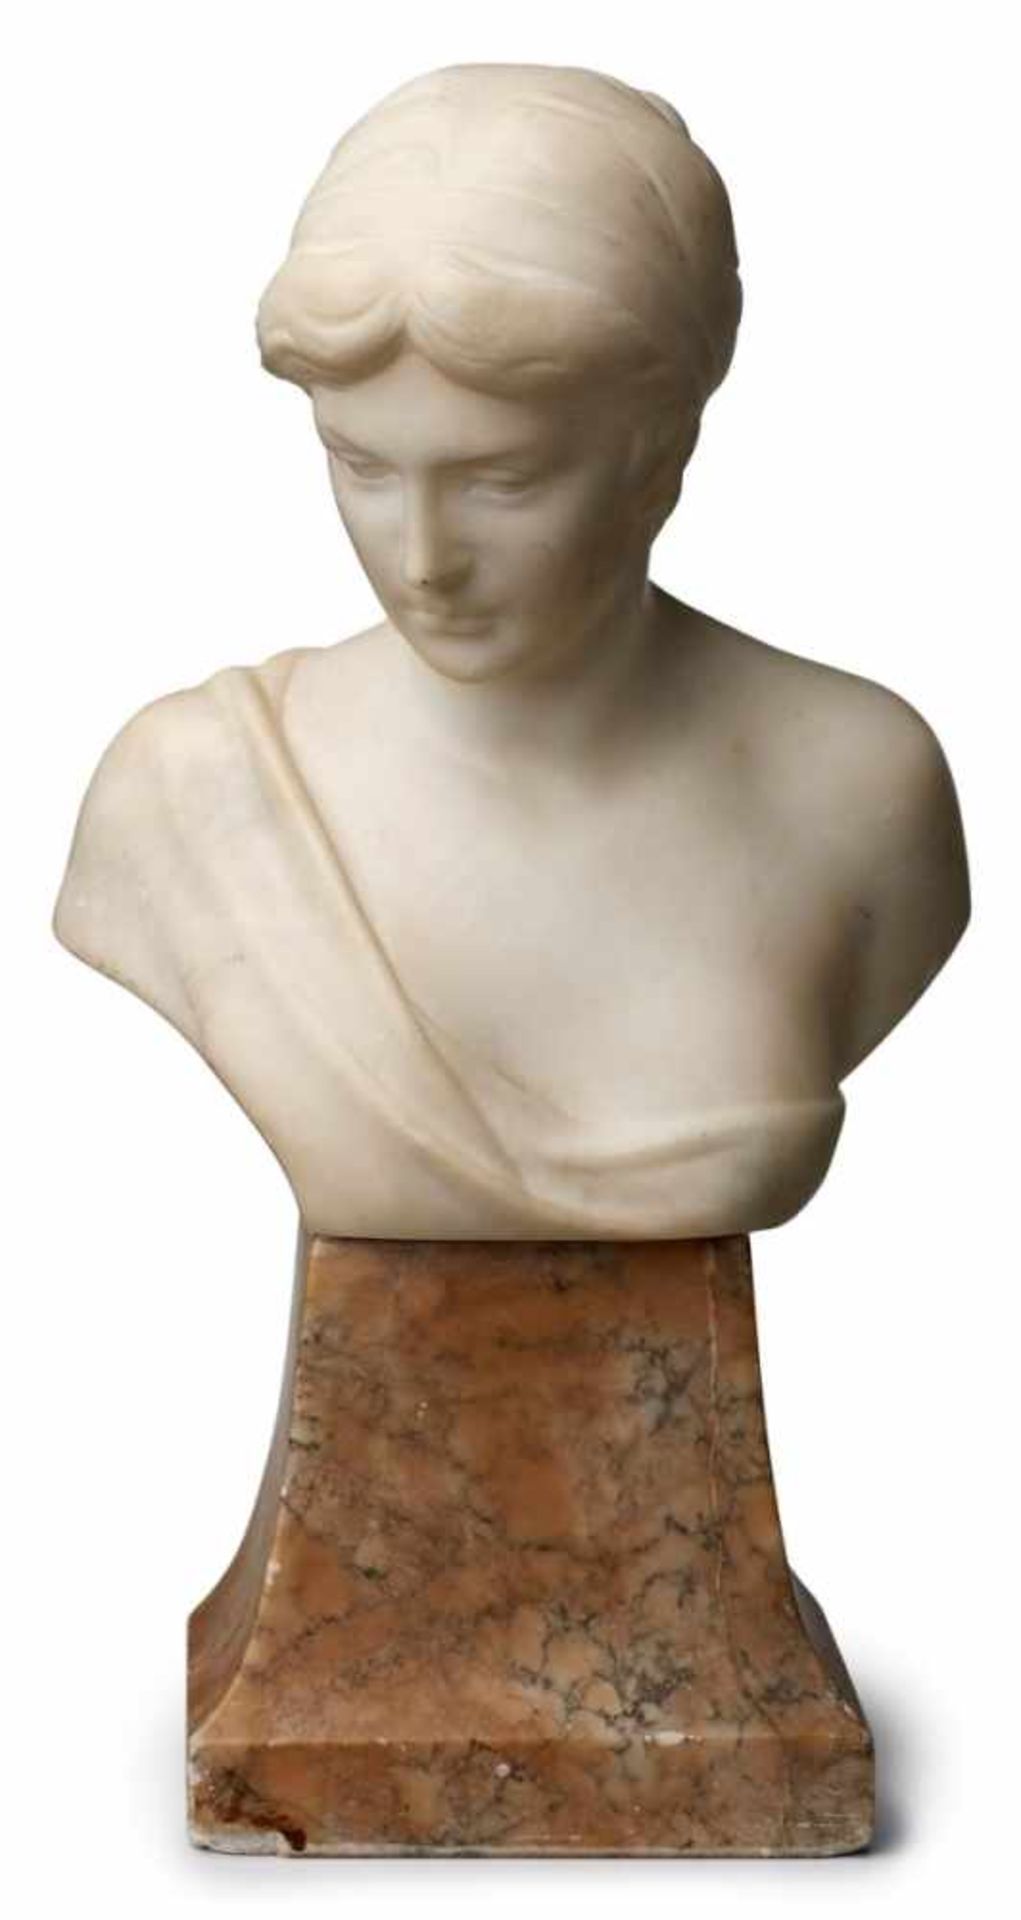 Marmorbüste Valmore Gemignani(Italien, 1879 - 1958) Junge Dame in antiker Manier, Jugendstil, dat.